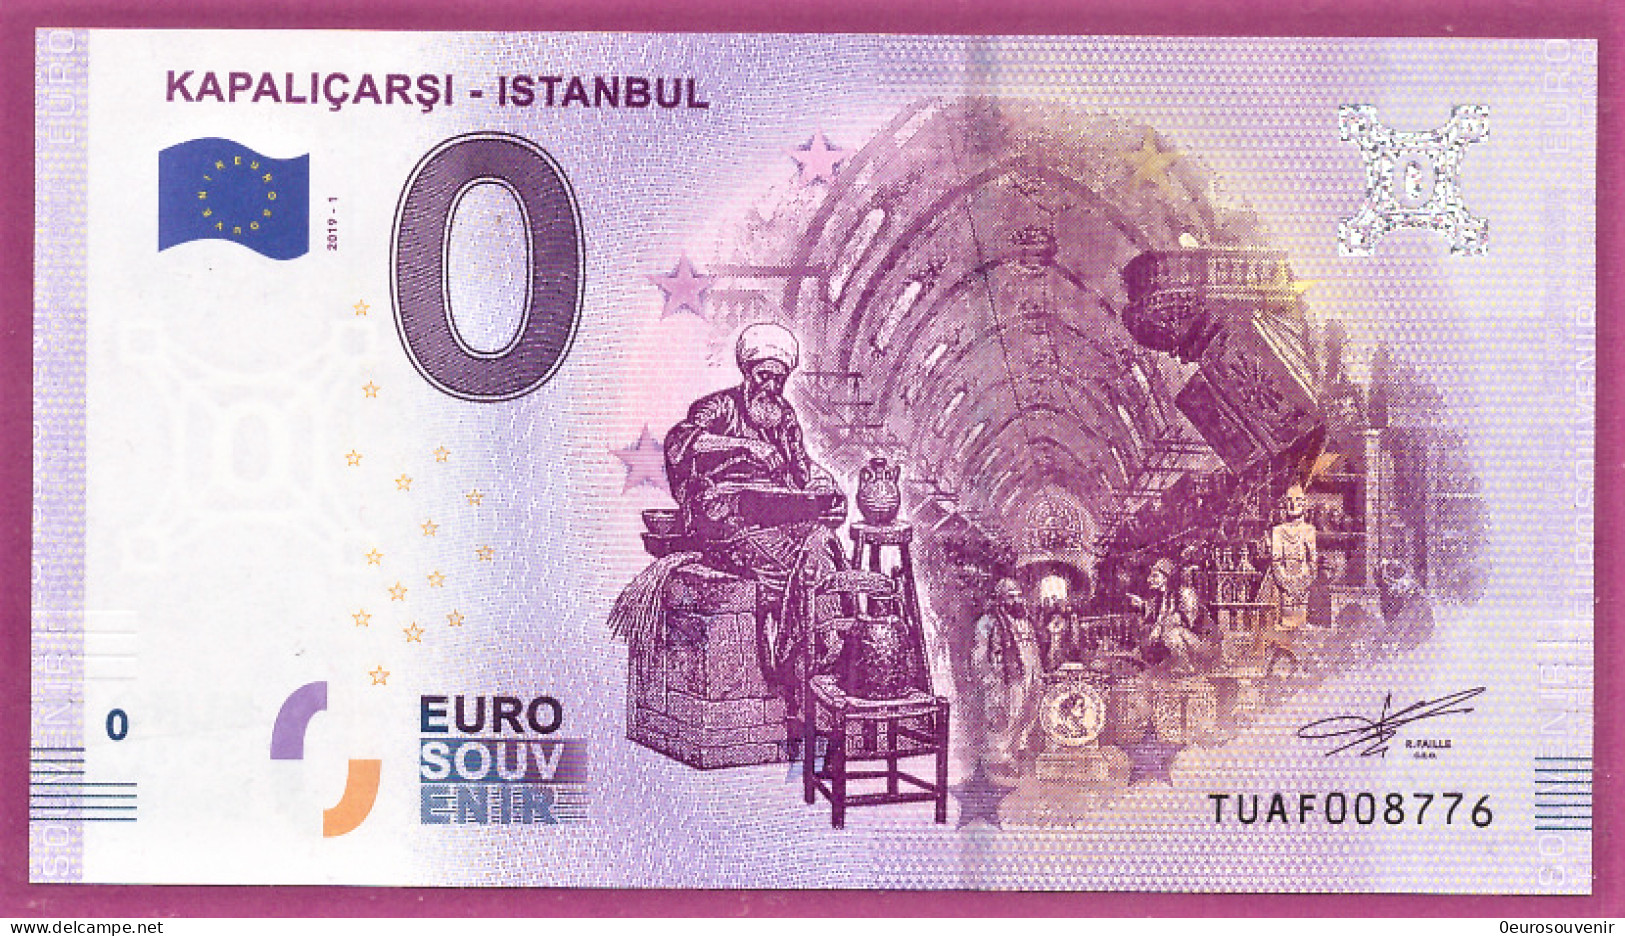 0-Euro TUAF 2019-1 KAPALICARSI - ISTANBUL - Pruebas Privadas